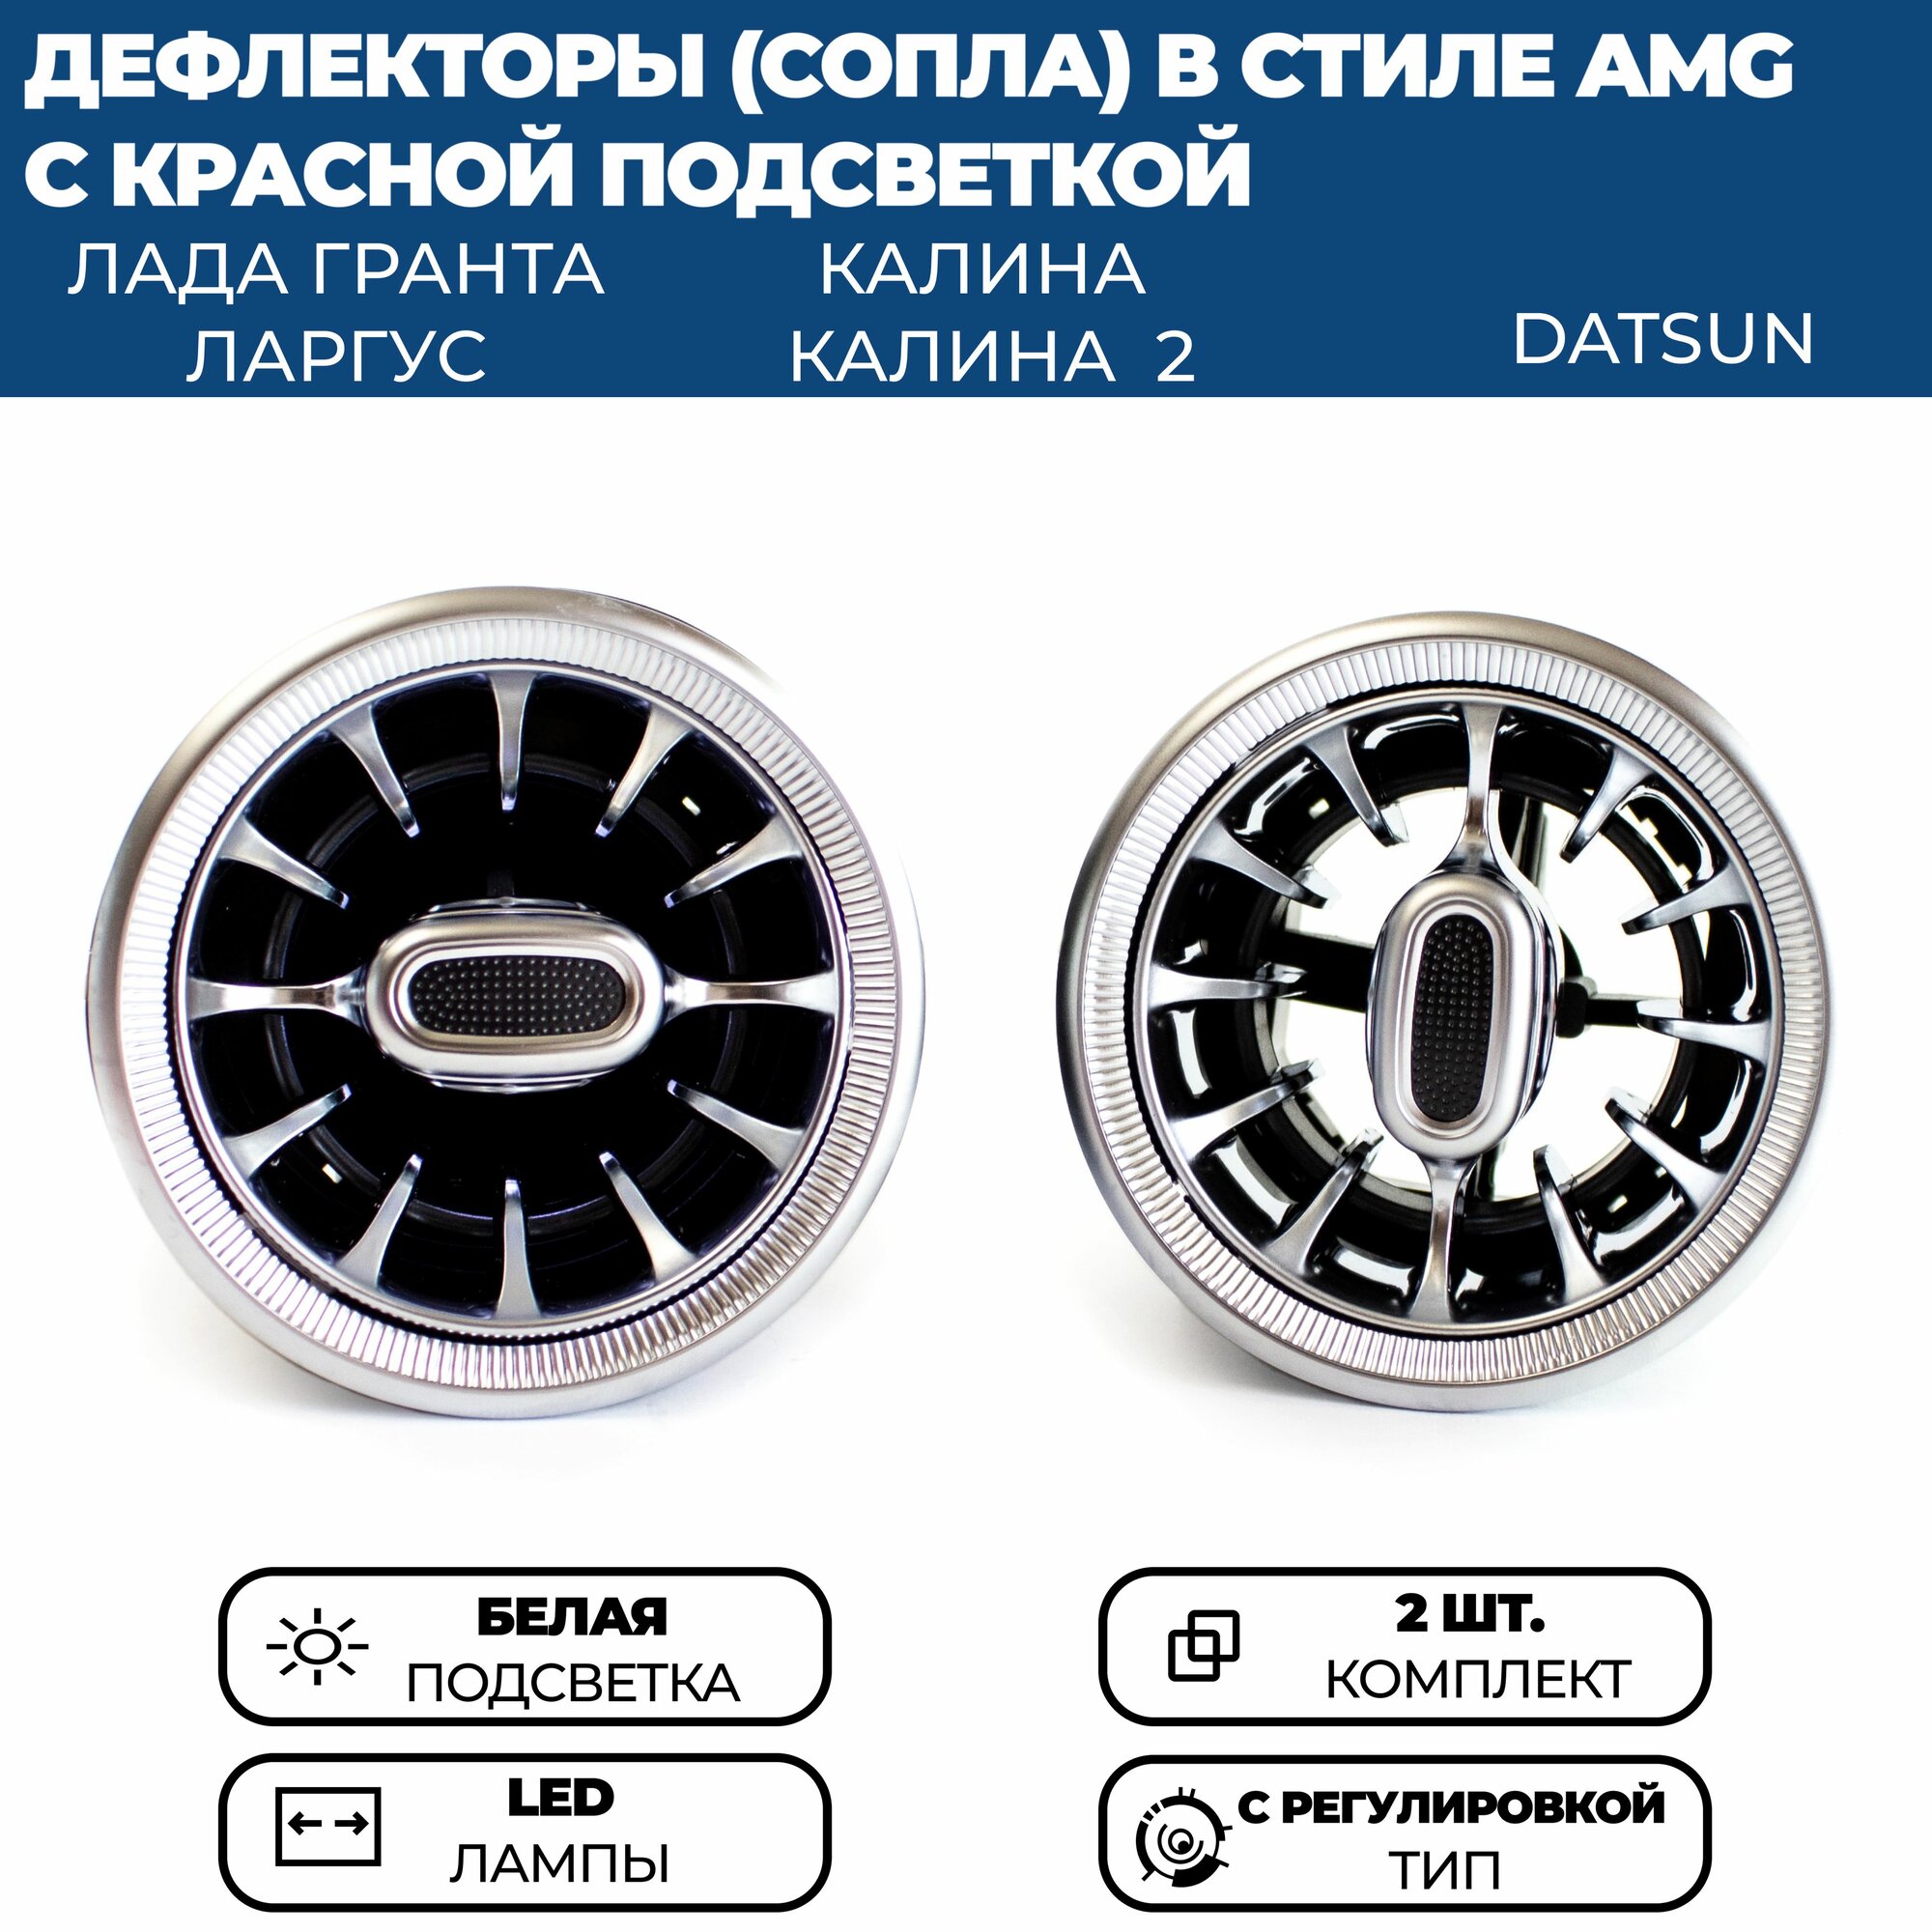 Дефлекторы (сопла) воздуховода AMG (2 шт.) для Гранта ФЛ Гранта Калина 2 Ларгус черные с регулировкой красная подсветка